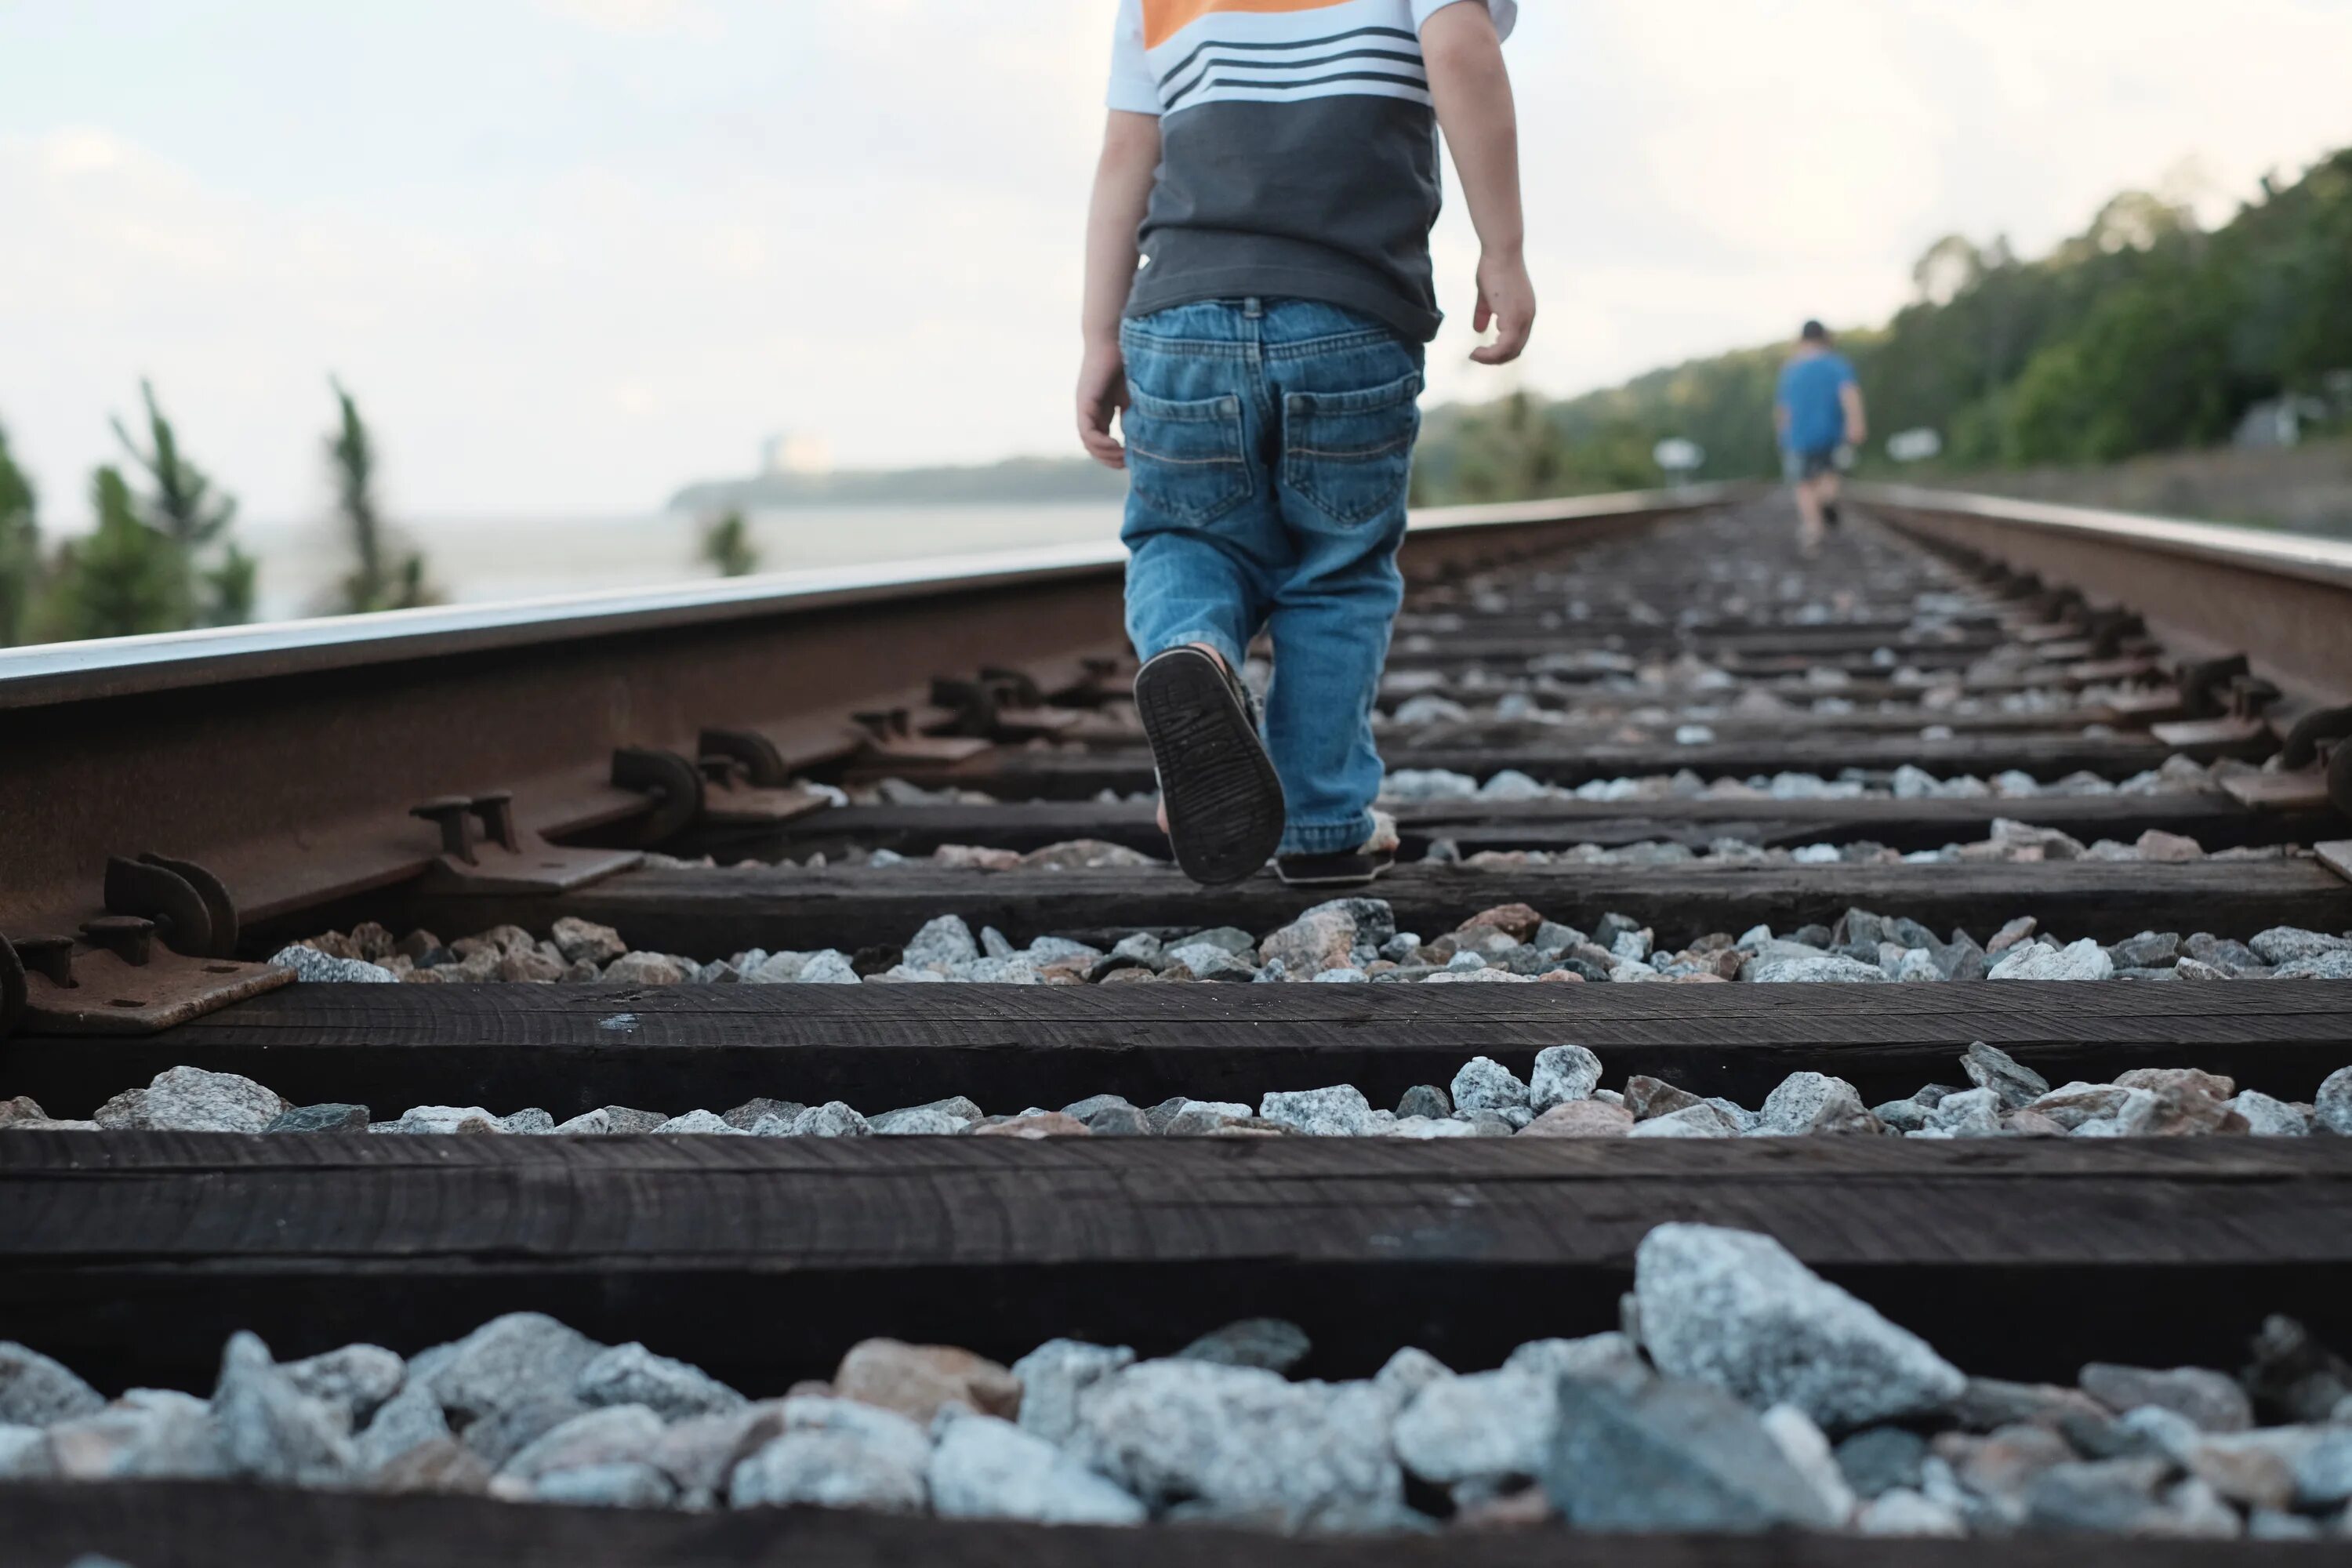 Случай на железной дороге. Камни на рельсах. Мальчик на железной дороге. Рельсы и человек.